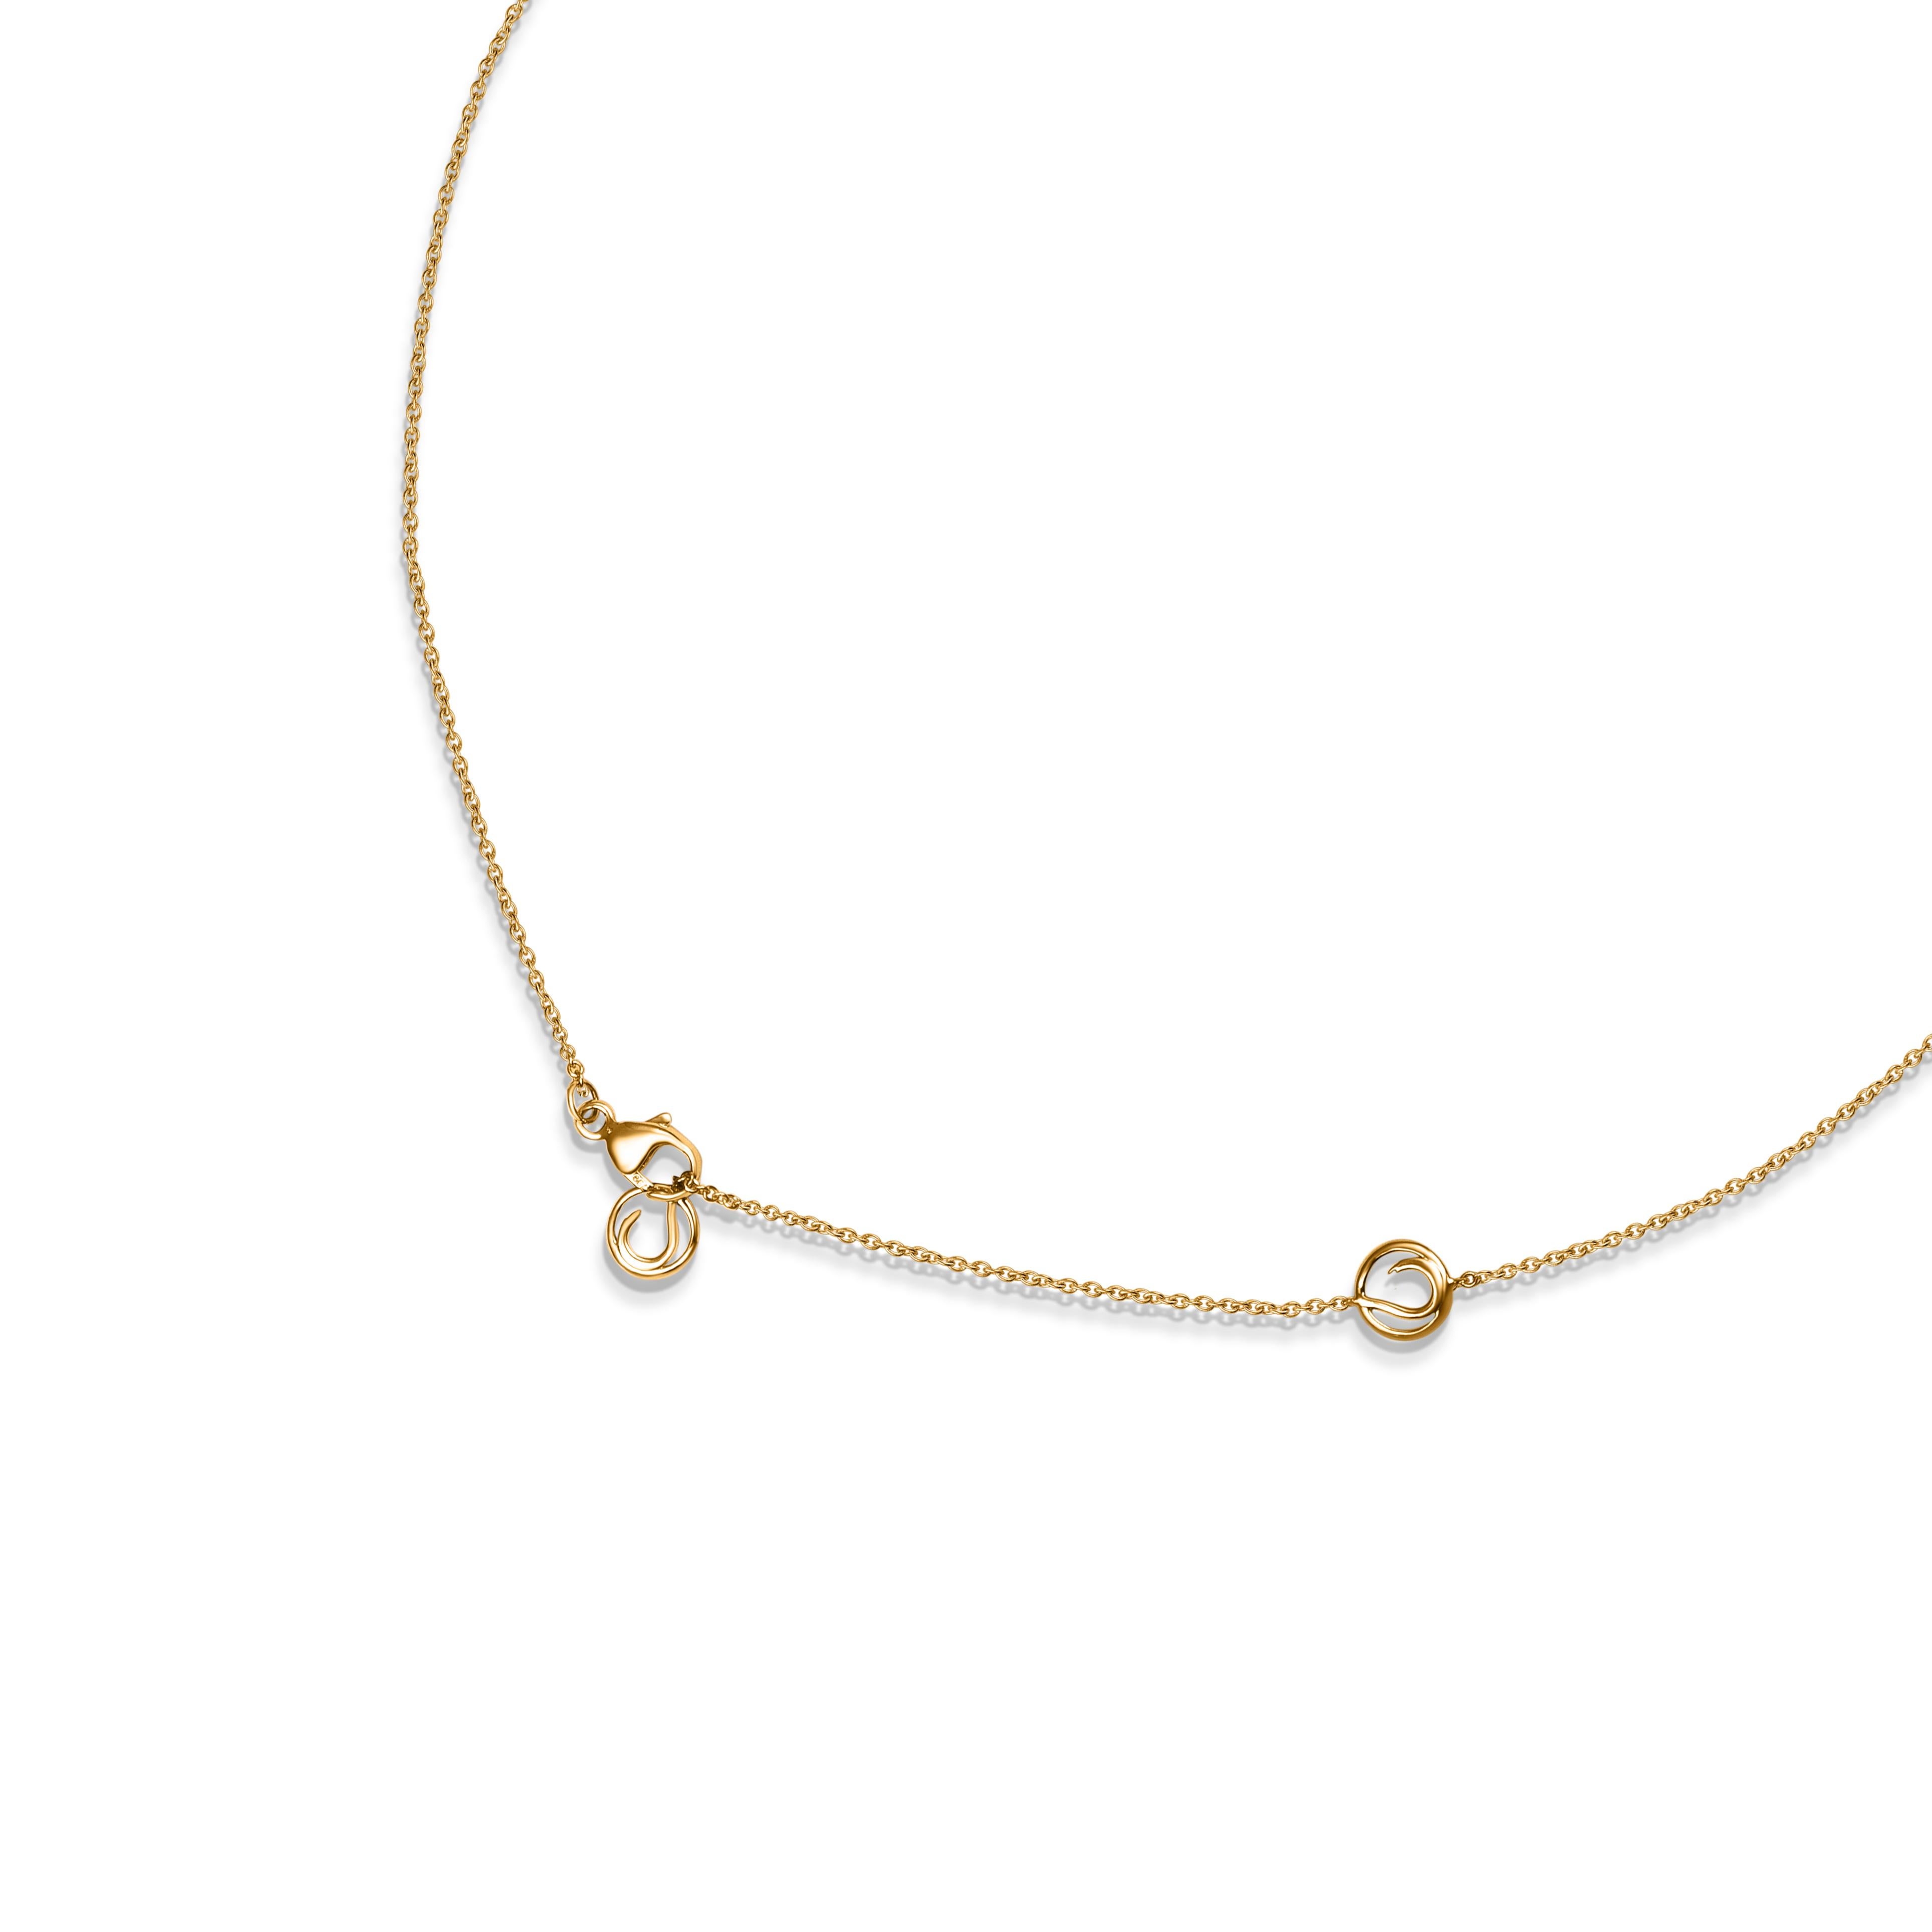 Inspiriert von den prächtigen indischen Havelis vergangener Zeiten, ist dieses moderne Collier aus 18 KT Gelbgold mit 44 runden Diamanten im Brillantschliff und 11 Diamanten im Rosenschliff besetzt. Das Gesamtgewicht der Diamanten beträgt 0,95